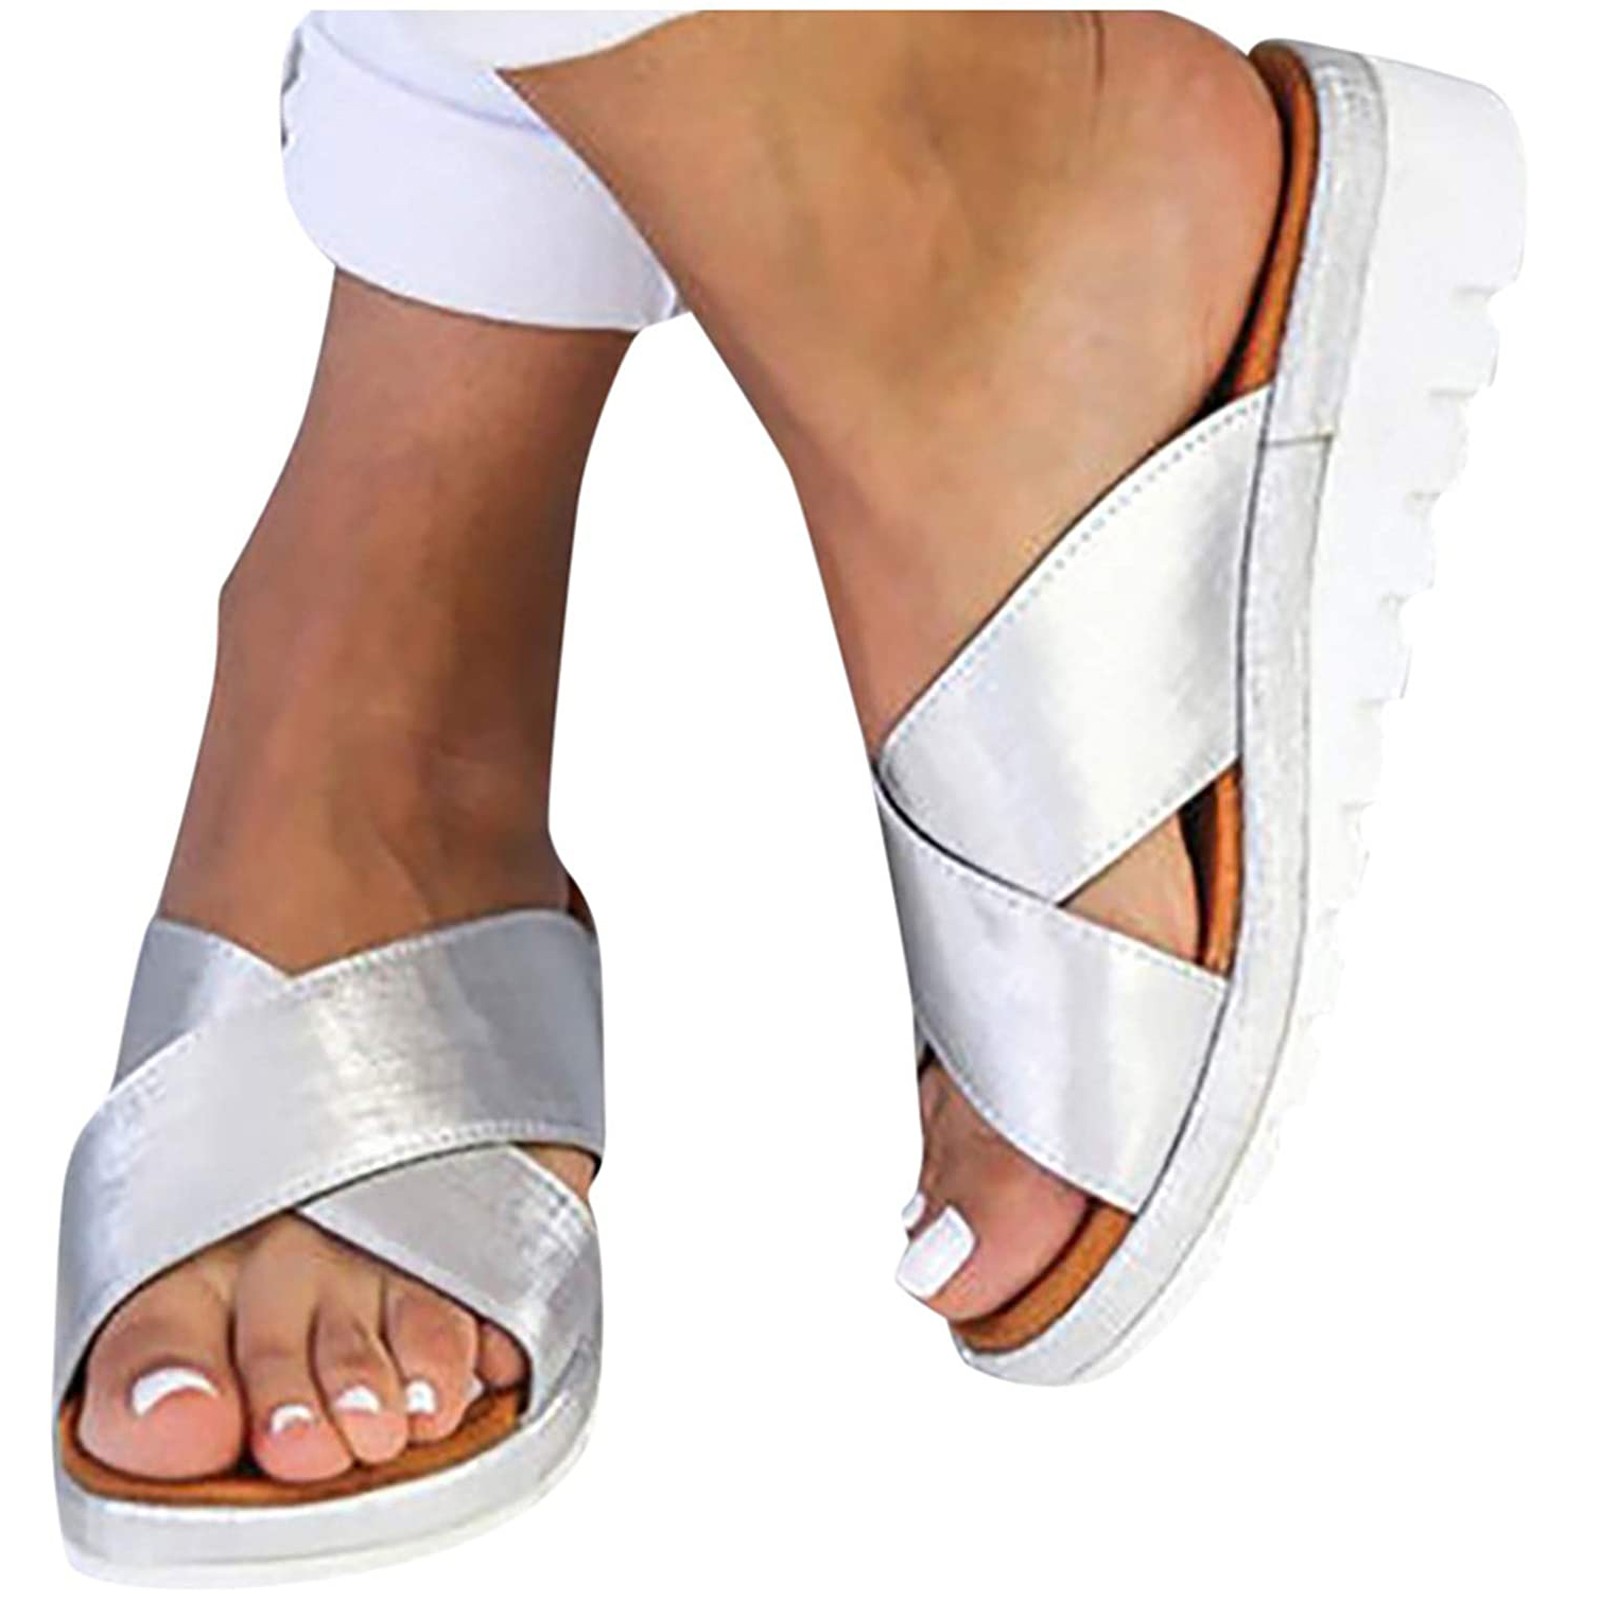 Mchoice Sandals for Women 2021 New Comfy Platform Sandal Shoes Slide ...